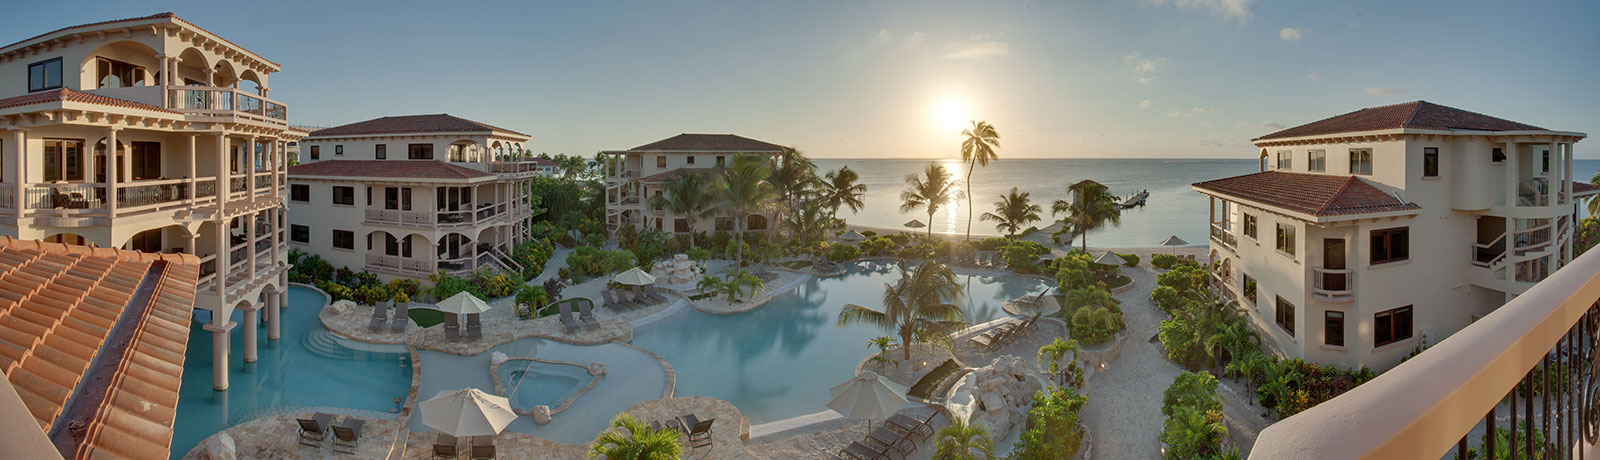 Belize Vacation Resort, Coco Beach Resort